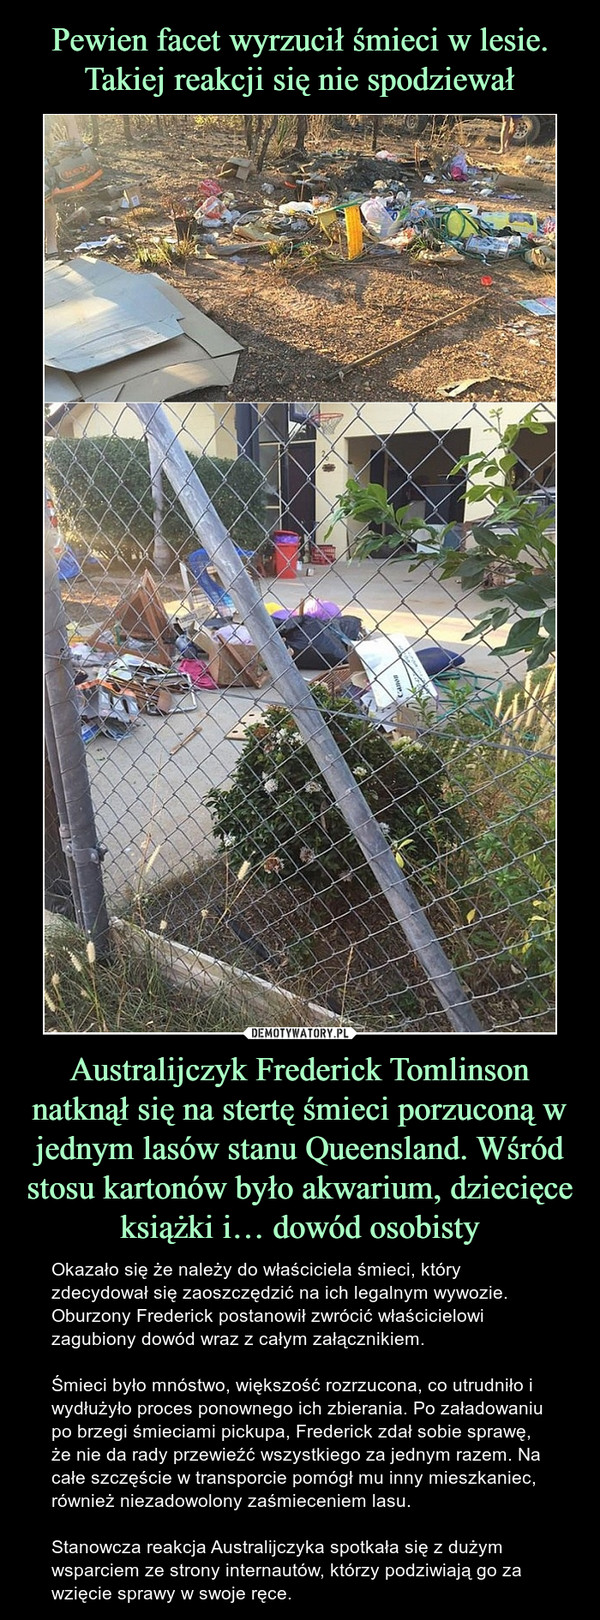 Australijczyk Frederick Tomlinson natknął się na stertę śmieci porzuconą w jednym lasów stanu Queensland. Wśród stosu kartonów było akwarium, dziecięce książki i… dowód osobisty – Okazało się że należy do właściciela śmieci, który zdecydował się zaoszczędzić na ich legalnym wywozie.  Oburzony Frederick postanowił zwrócić właścicielowi zagubiony dowód wraz z całym załącznikiem.Śmieci było mnóstwo, większość rozrzucona, co utrudniło i wydłużyło proces ponownego ich zbierania. Po załadowaniu po brzegi śmieciami pickupa, Frederick zdał sobie sprawę, że nie da rady przewieźć wszystkiego za jednym razem. Na całe szczęście w transporcie pomógł mu inny mieszkaniec, również niezadowolony zaśmieceniem lasu.Stanowcza reakcja Australijczyka spotkała się z dużym wsparciem ze strony internautów, którzy podziwiają go za wzięcie sprawy w swoje ręce. 